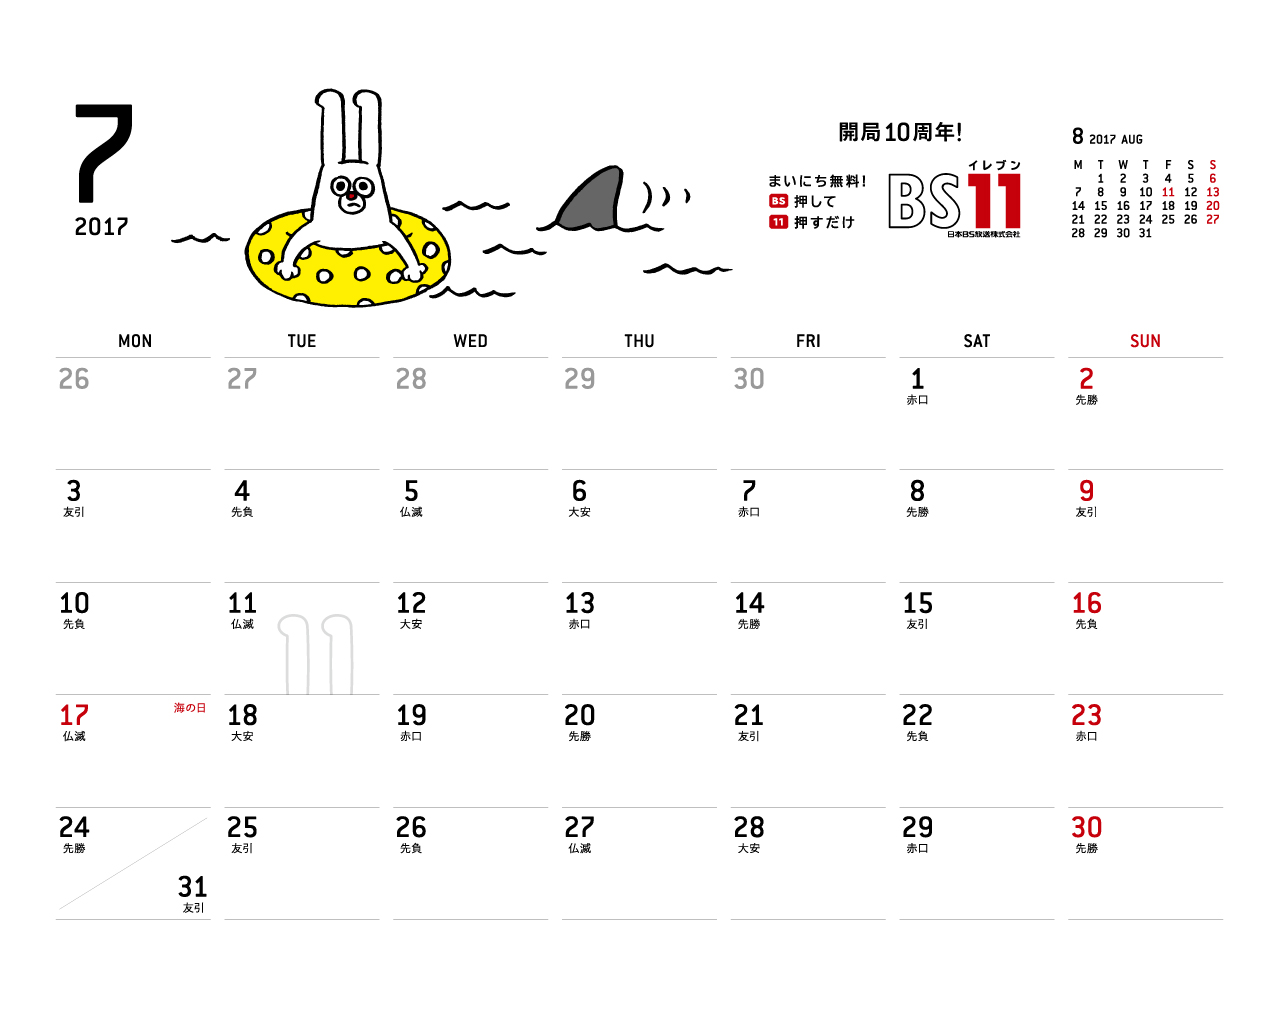 じゅういっちゃんのデジタルカレンダー17年07月 Bs11 イレブン いつでも無料放送